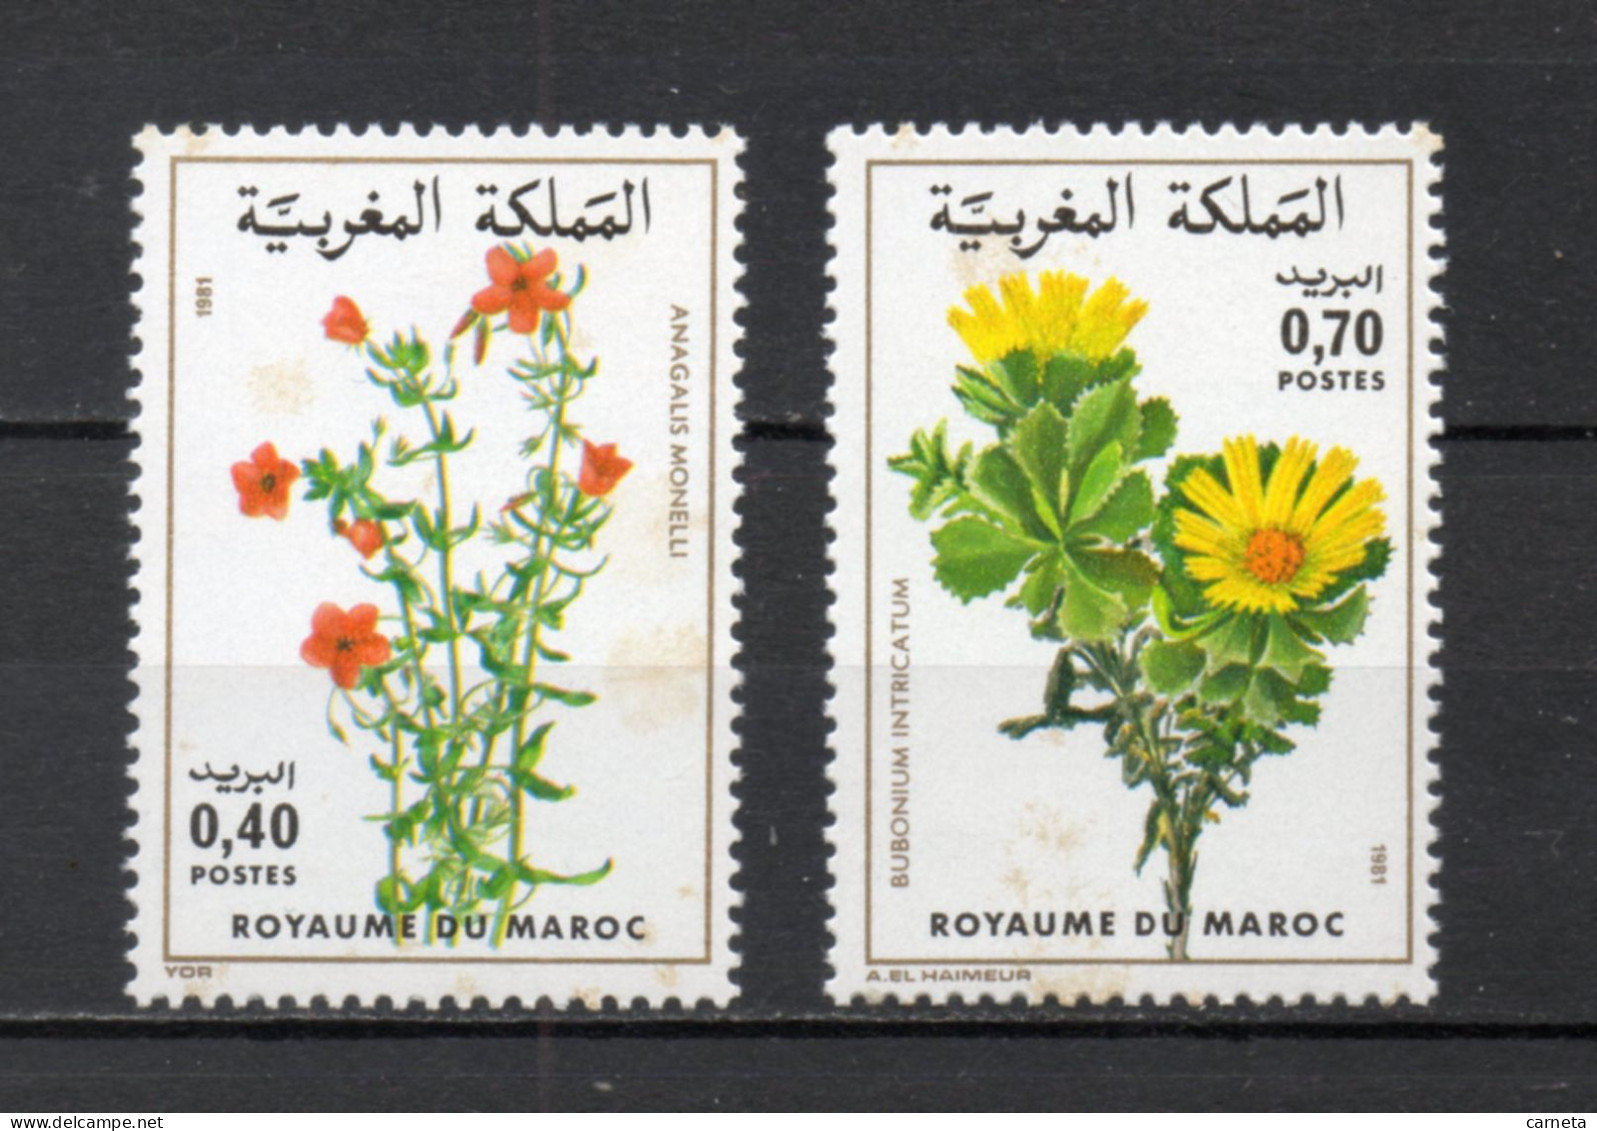 MAROC N°  880 + 881    NEUFS SANS CHARNIERE  COTE 3.50€    FLEUR FLORE VOIR DESCRIPTION - Morocco (1956-...)